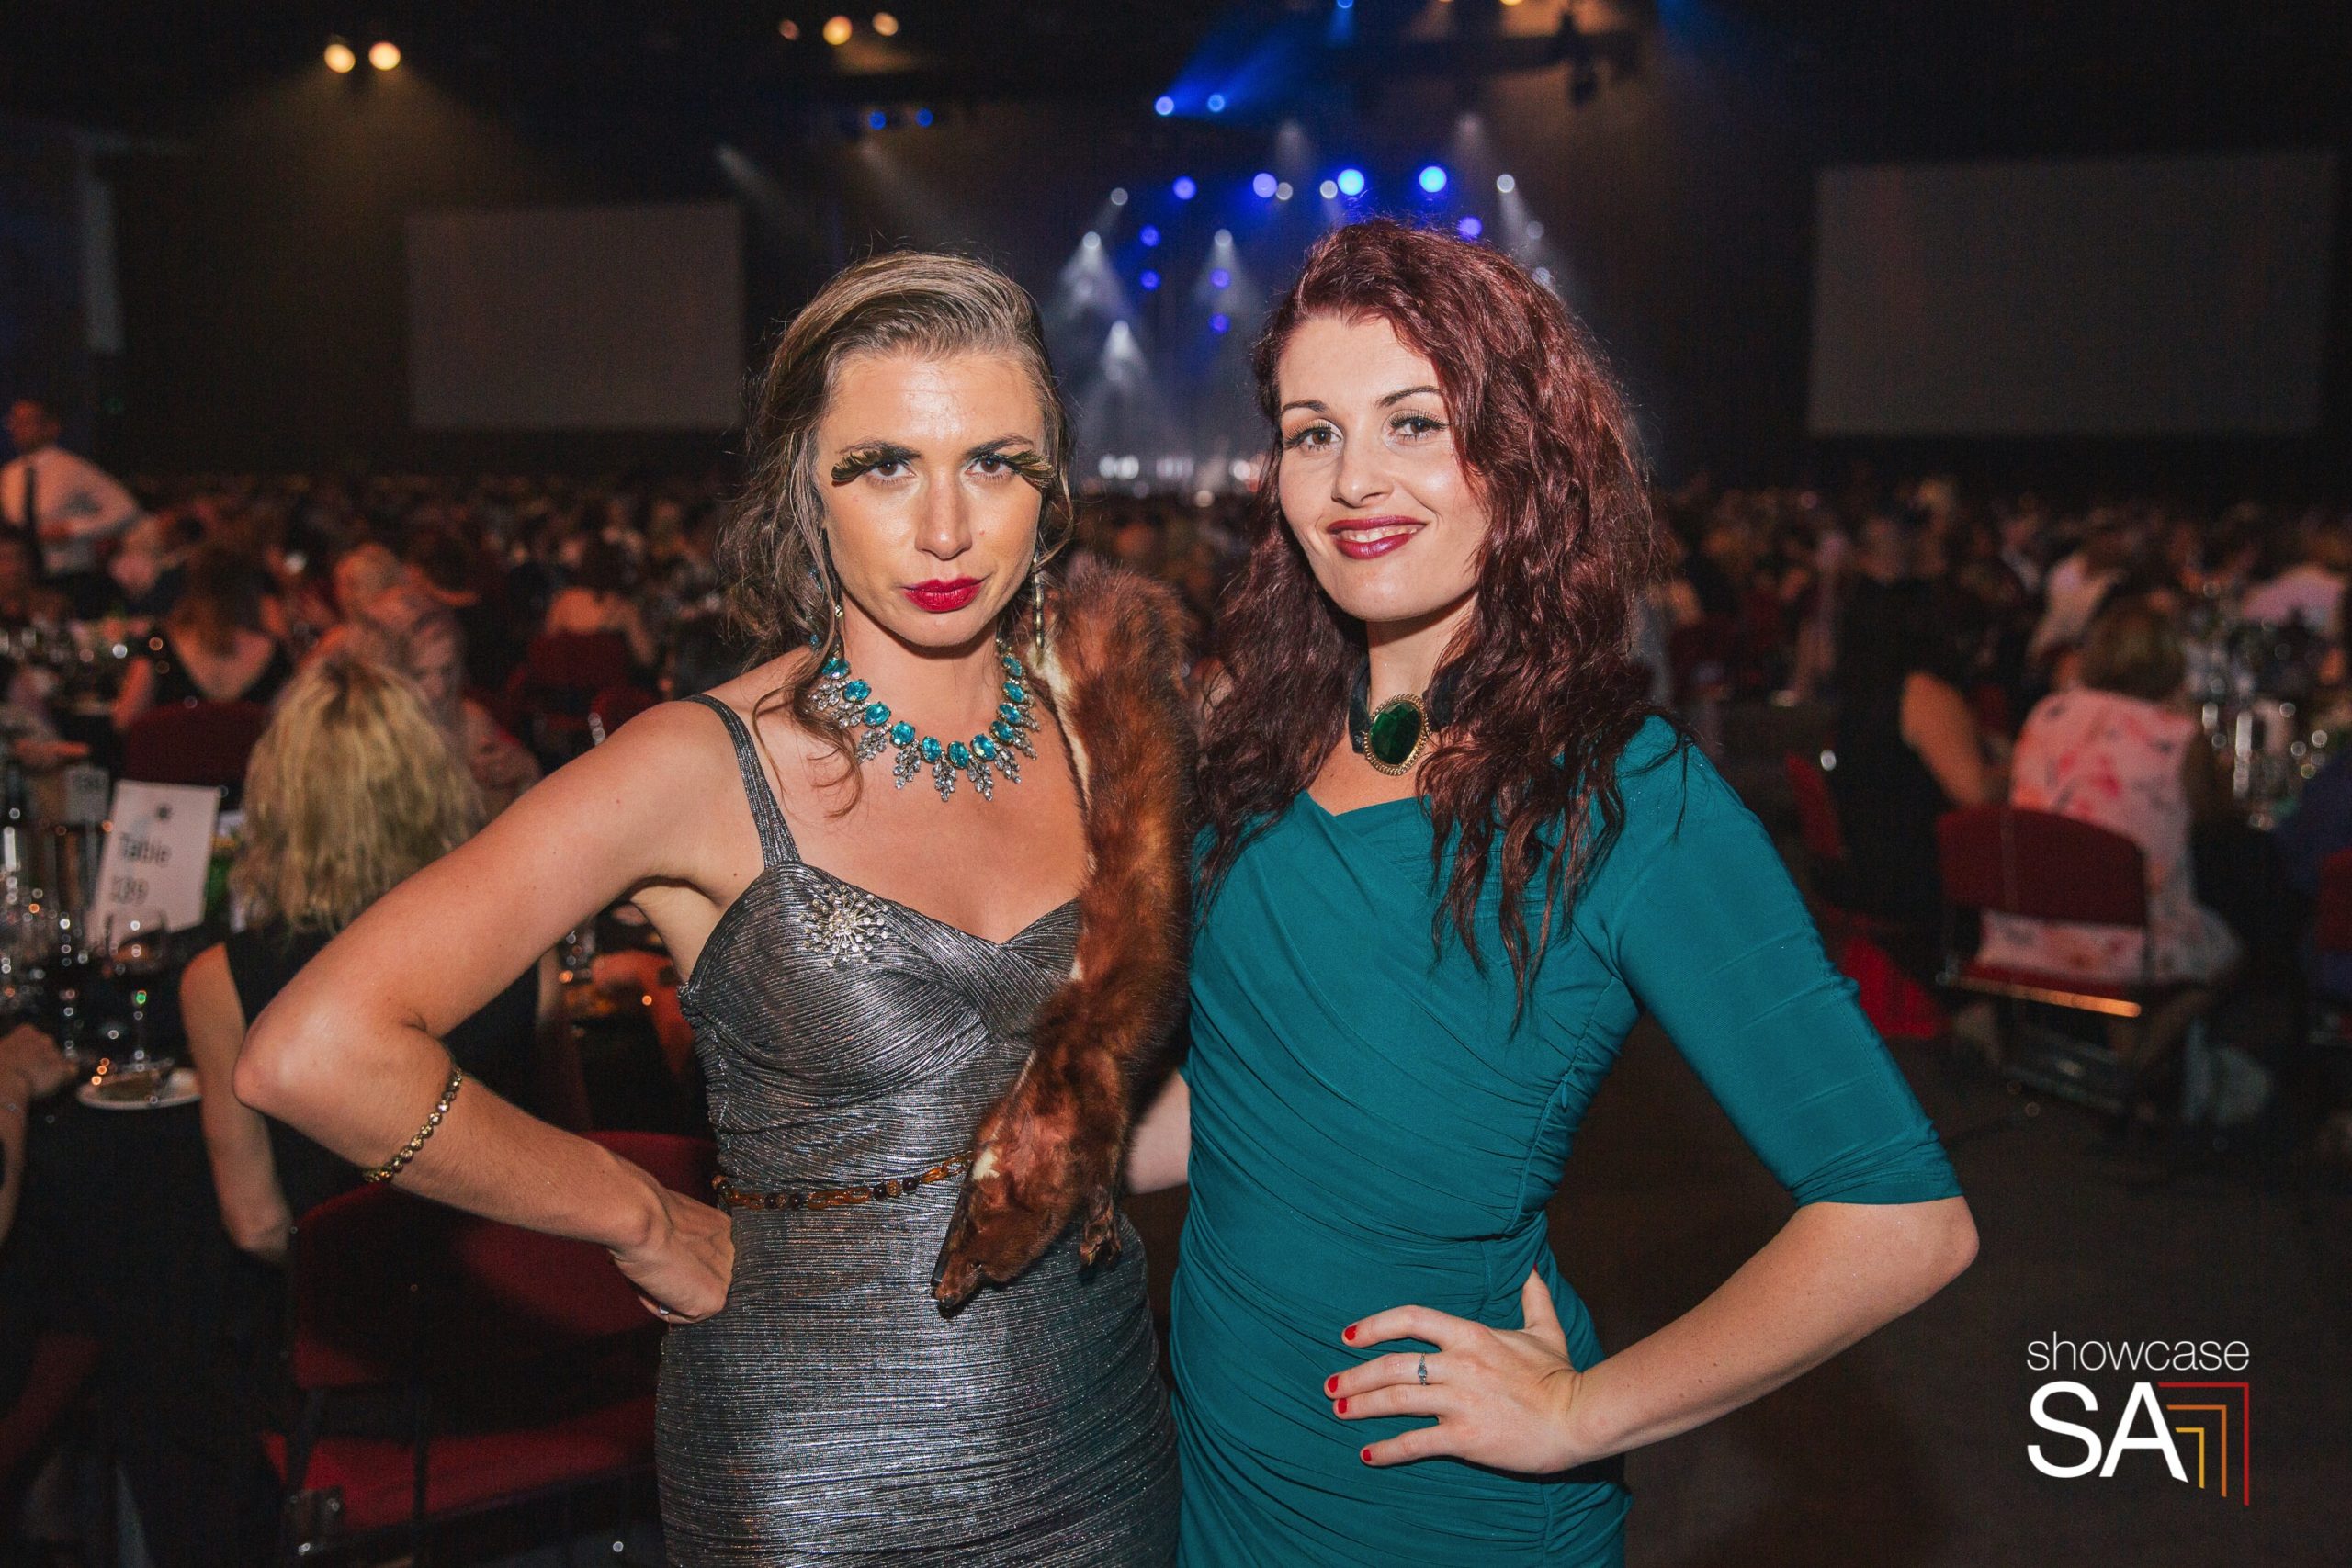 SA4SA Bushfire Gala event at Adelaide Convention Centre (pic: Showcase SA)